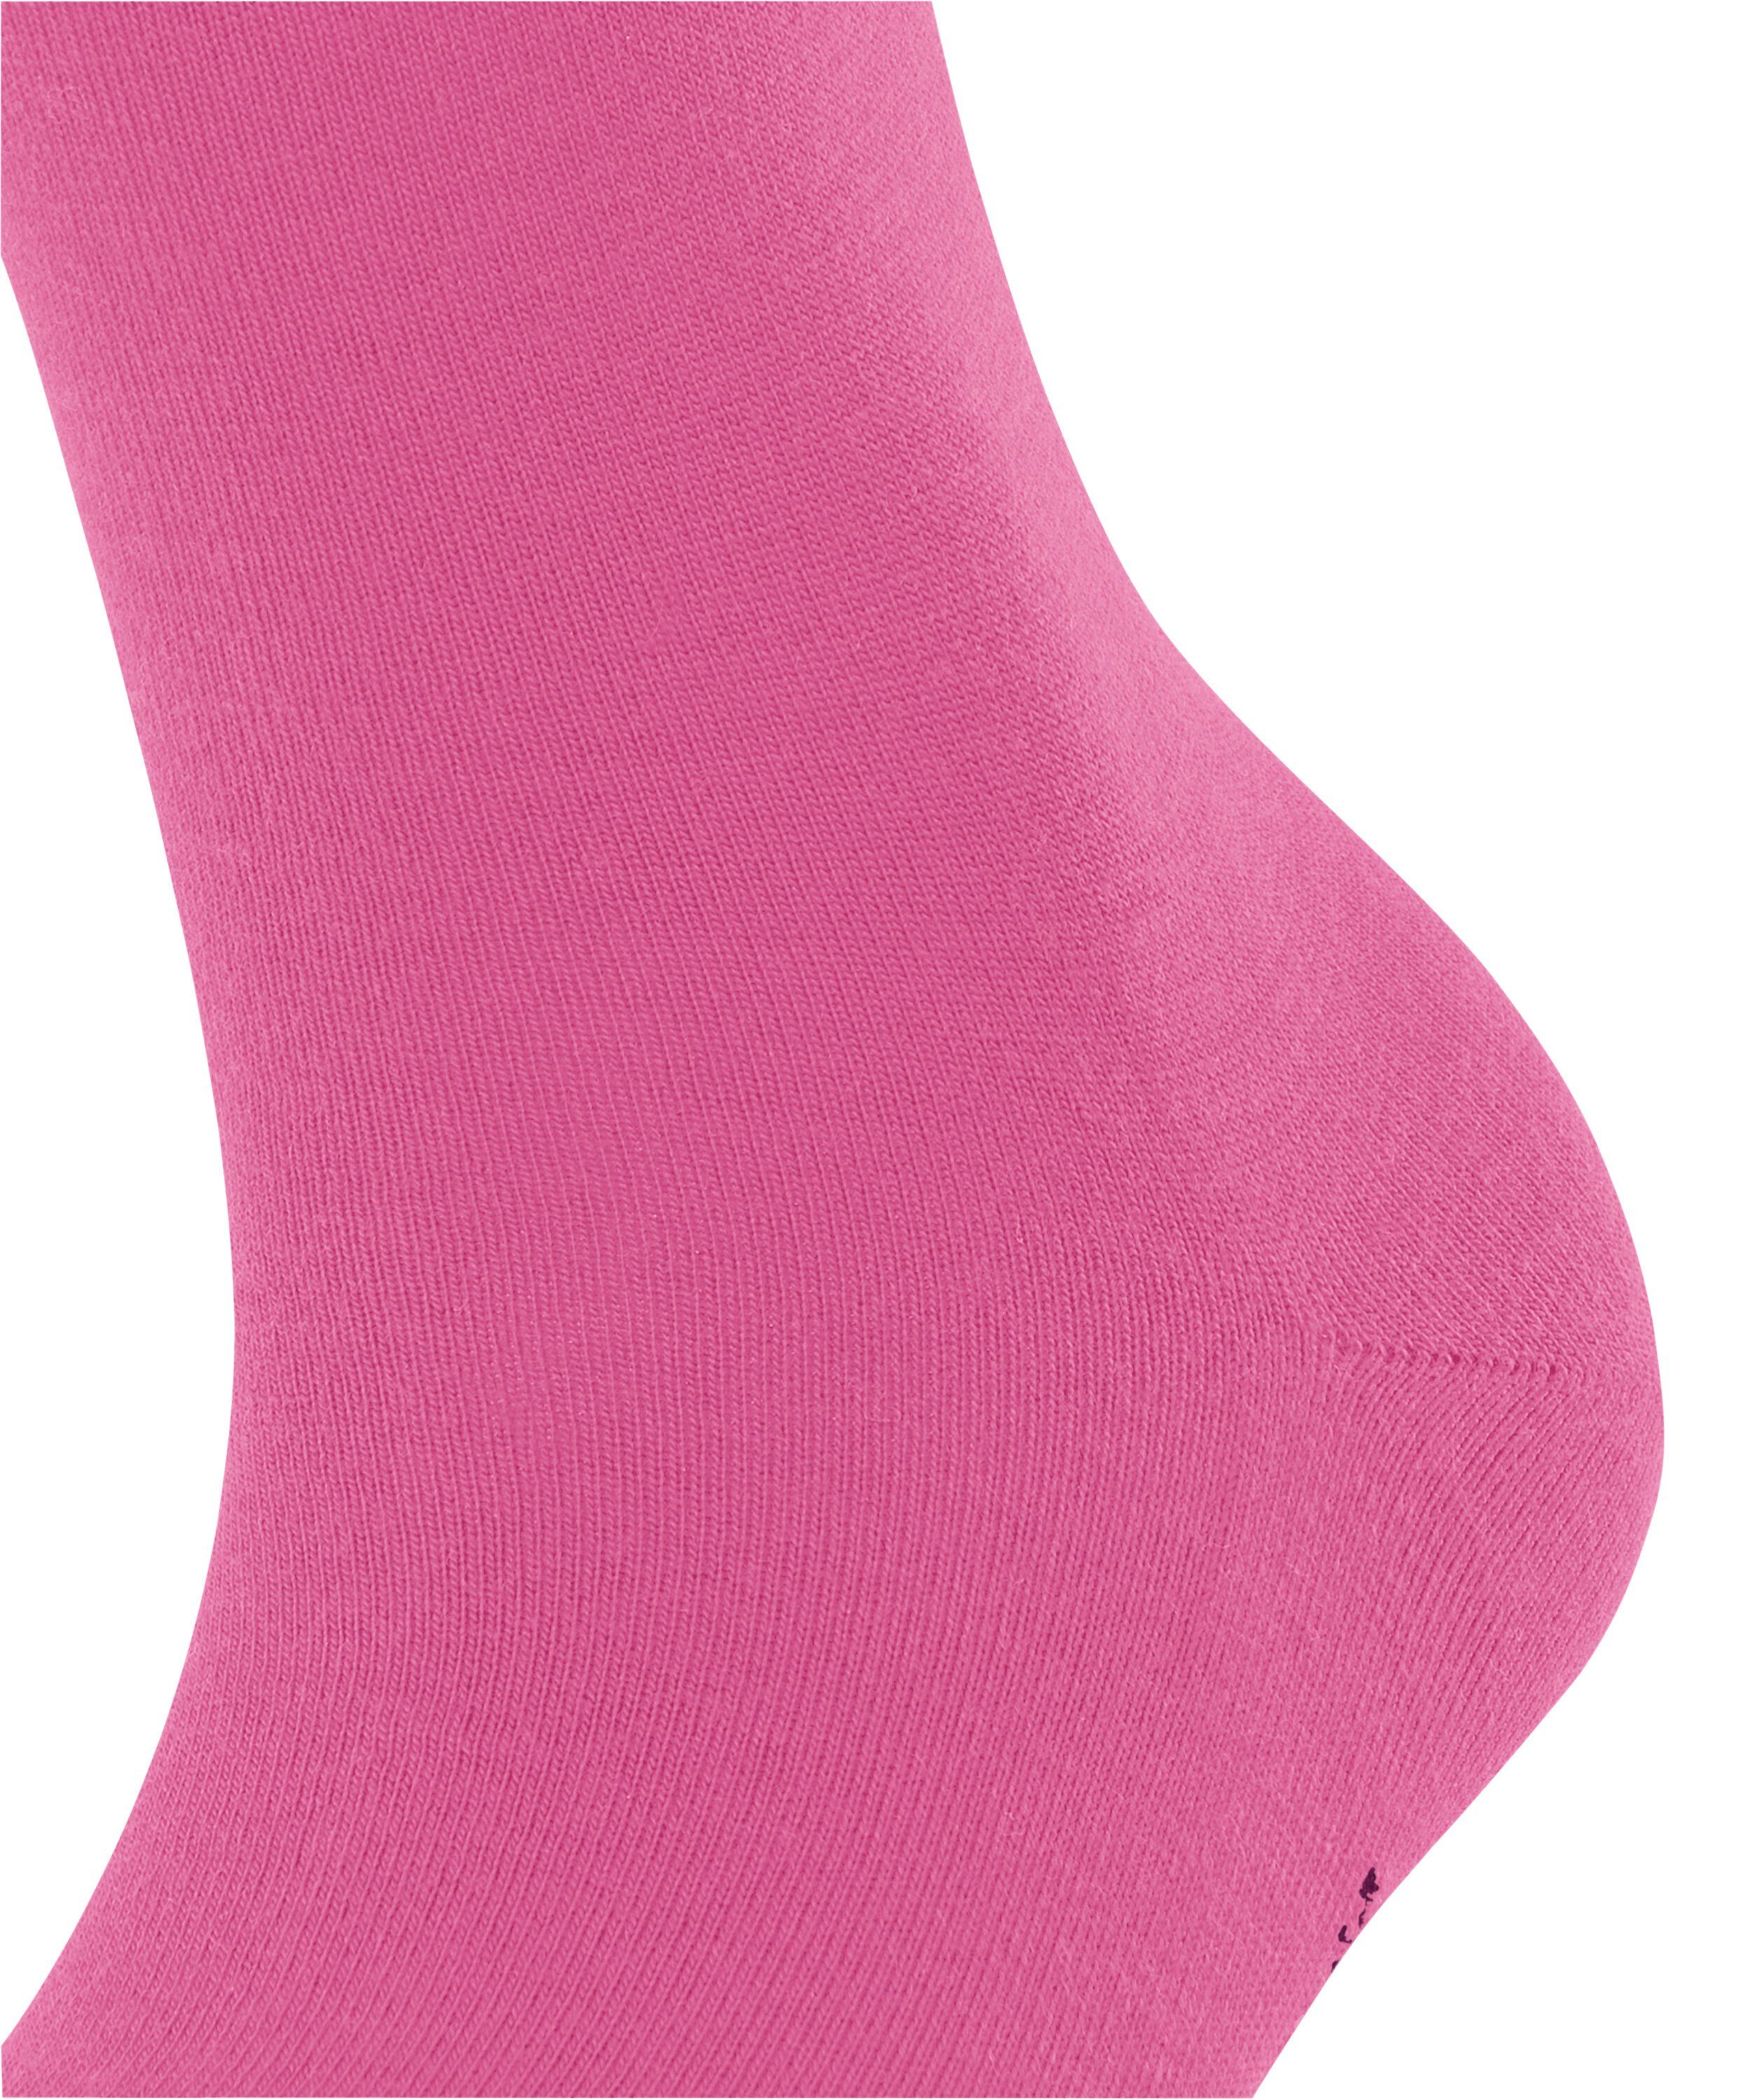 pink Socken (8462) FALKE Softmerino (1-Paar)